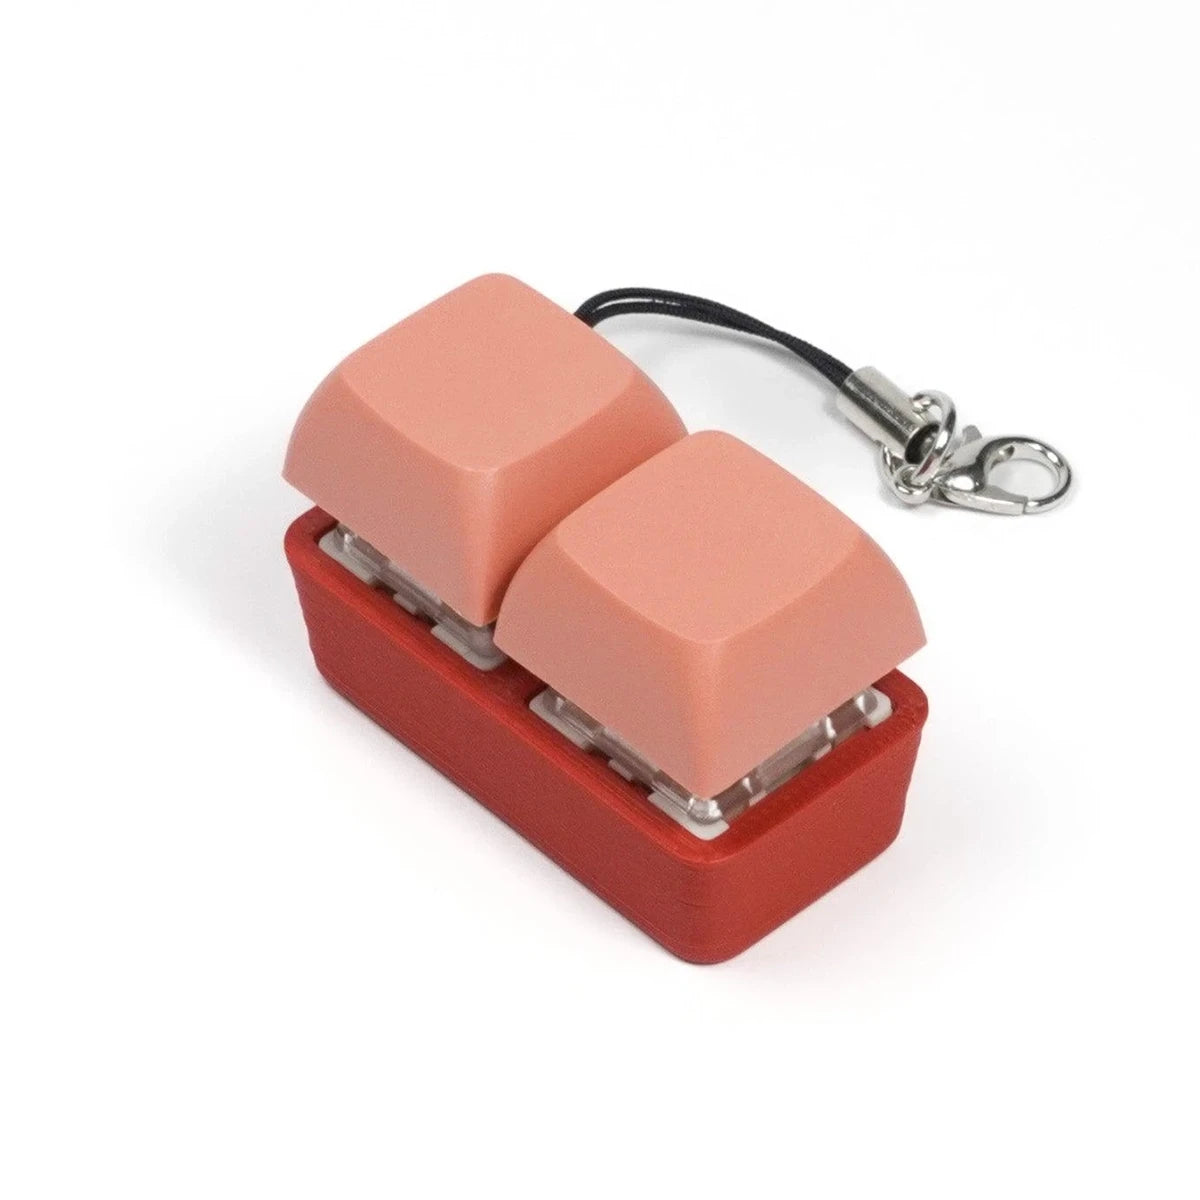 Strudel 3D 2 Key Fidget Keychain - Two-Tone Series - Red